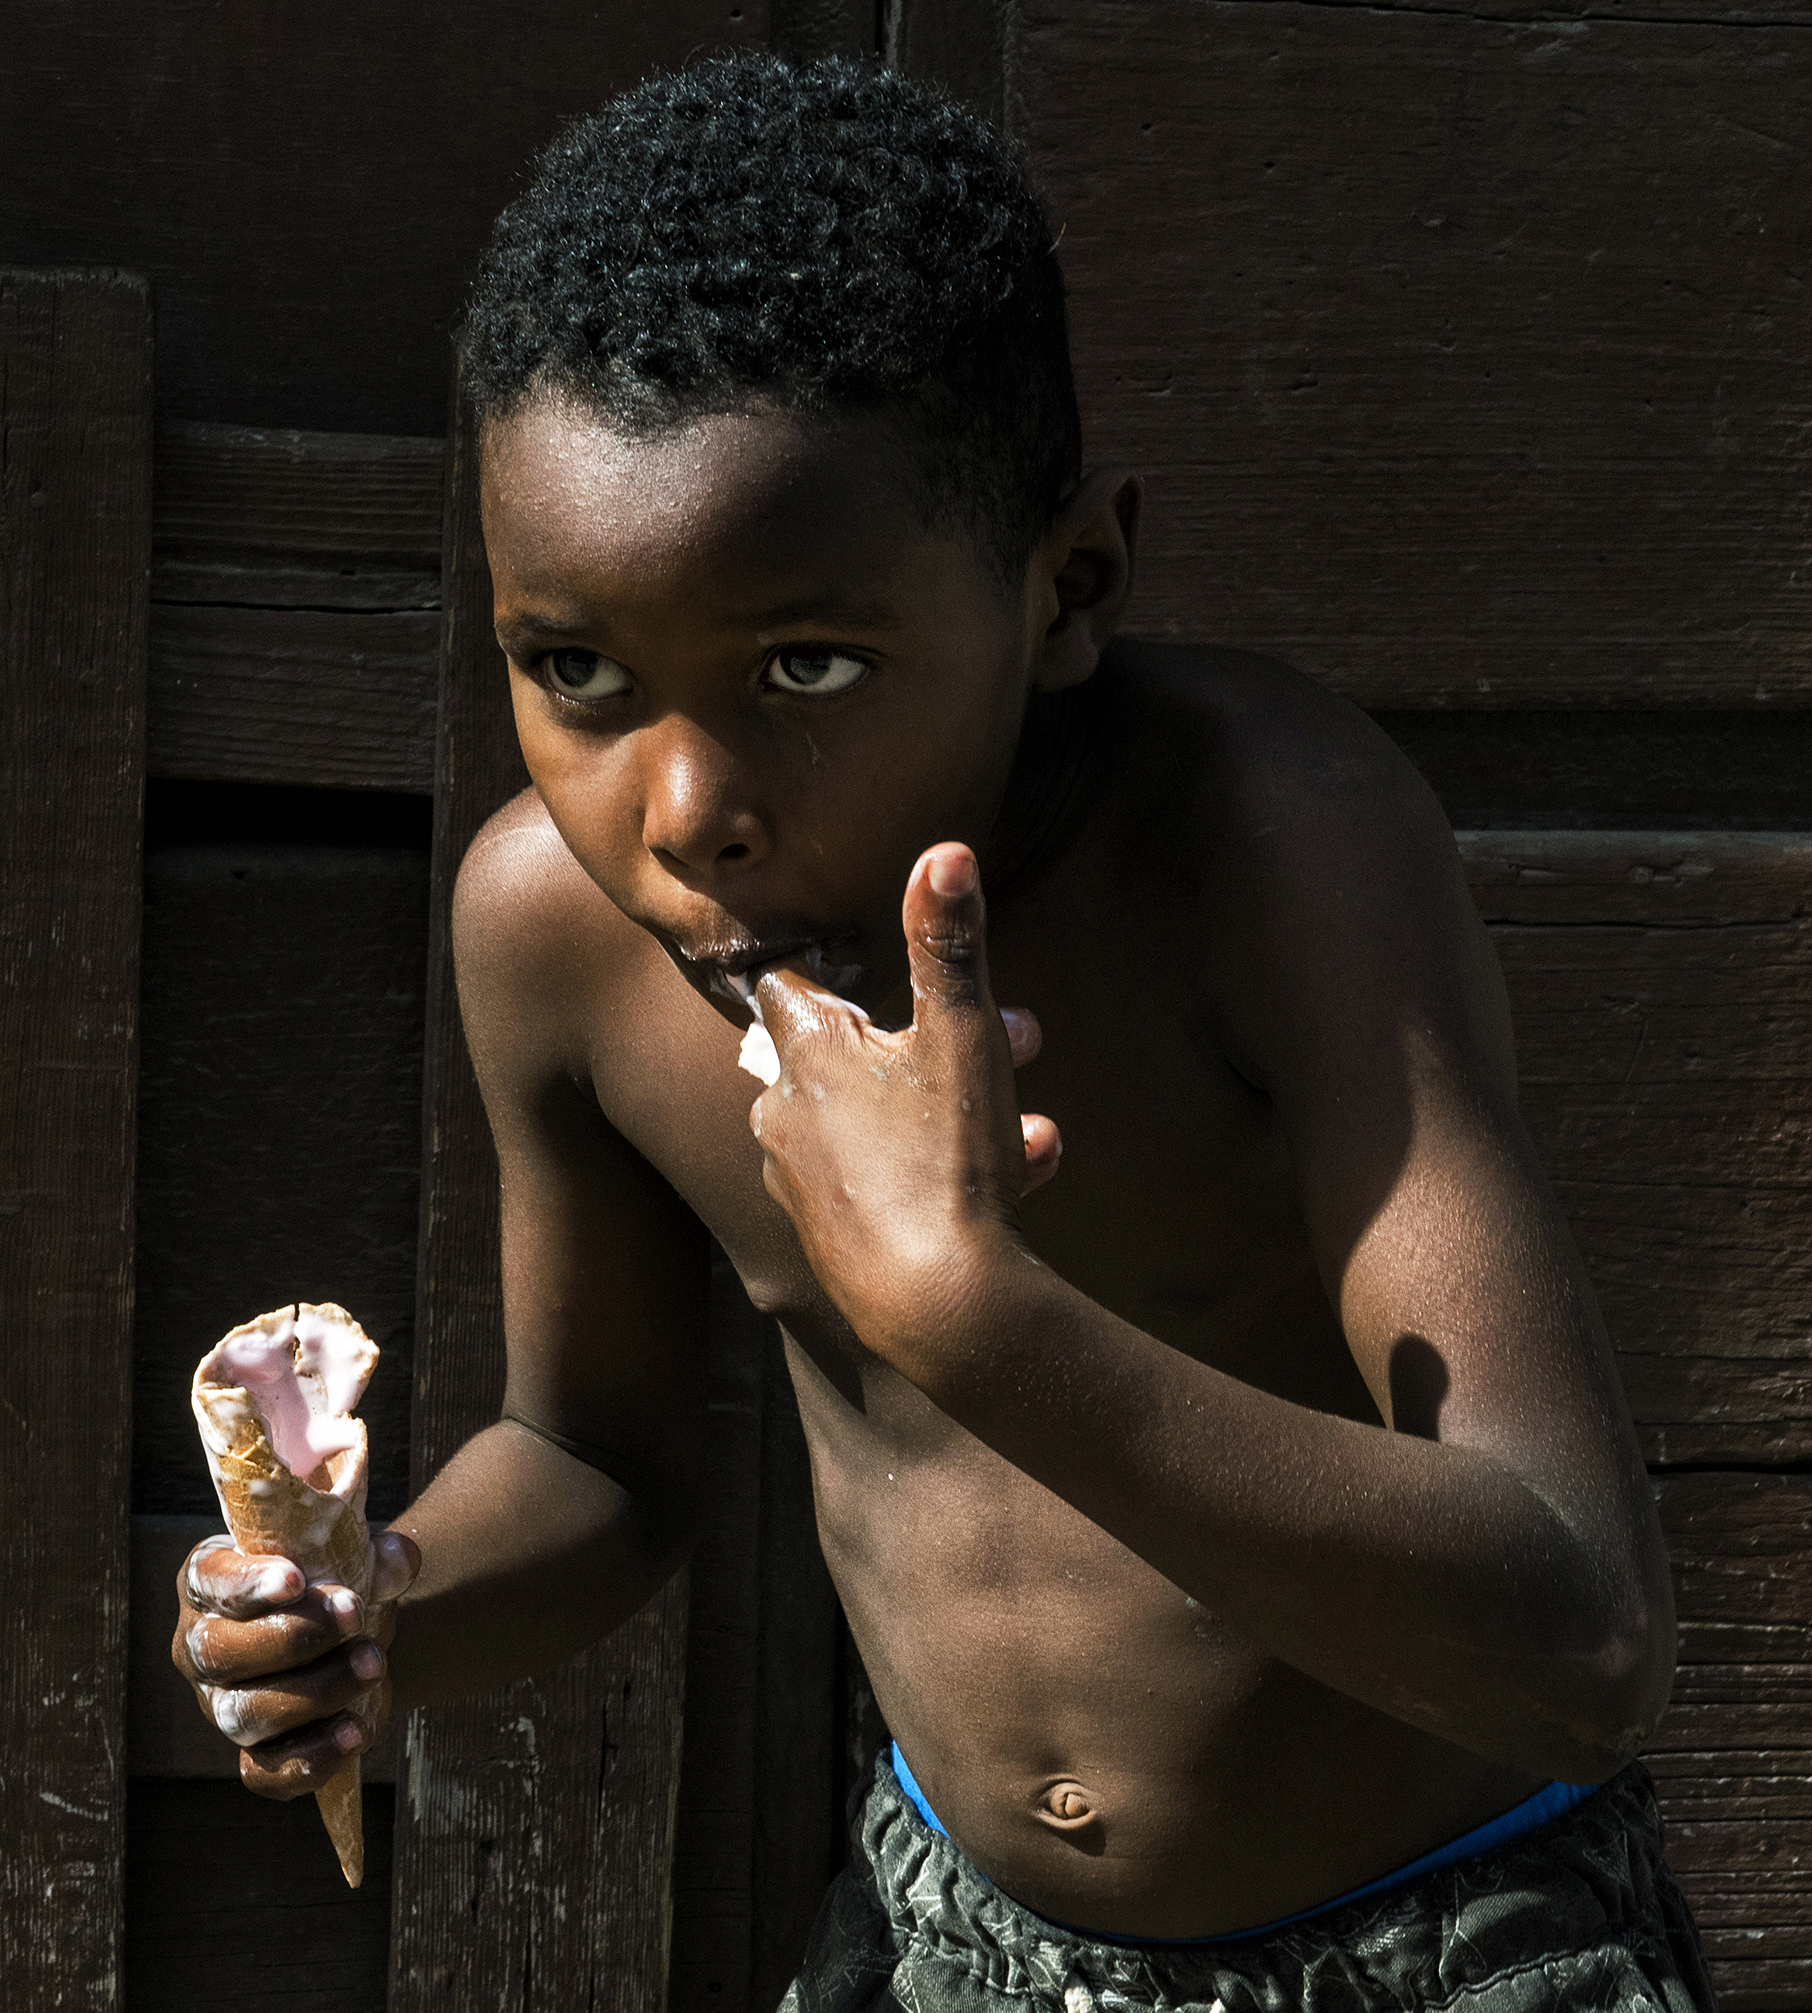 Có lẽ đã lâu lắm rồi cậu bé này mới được thưởng thức một cây kem. Kem là món ăn bình dân, giá có vài peso Cuba nhưng không phải ai cũng có tiền mua kem.